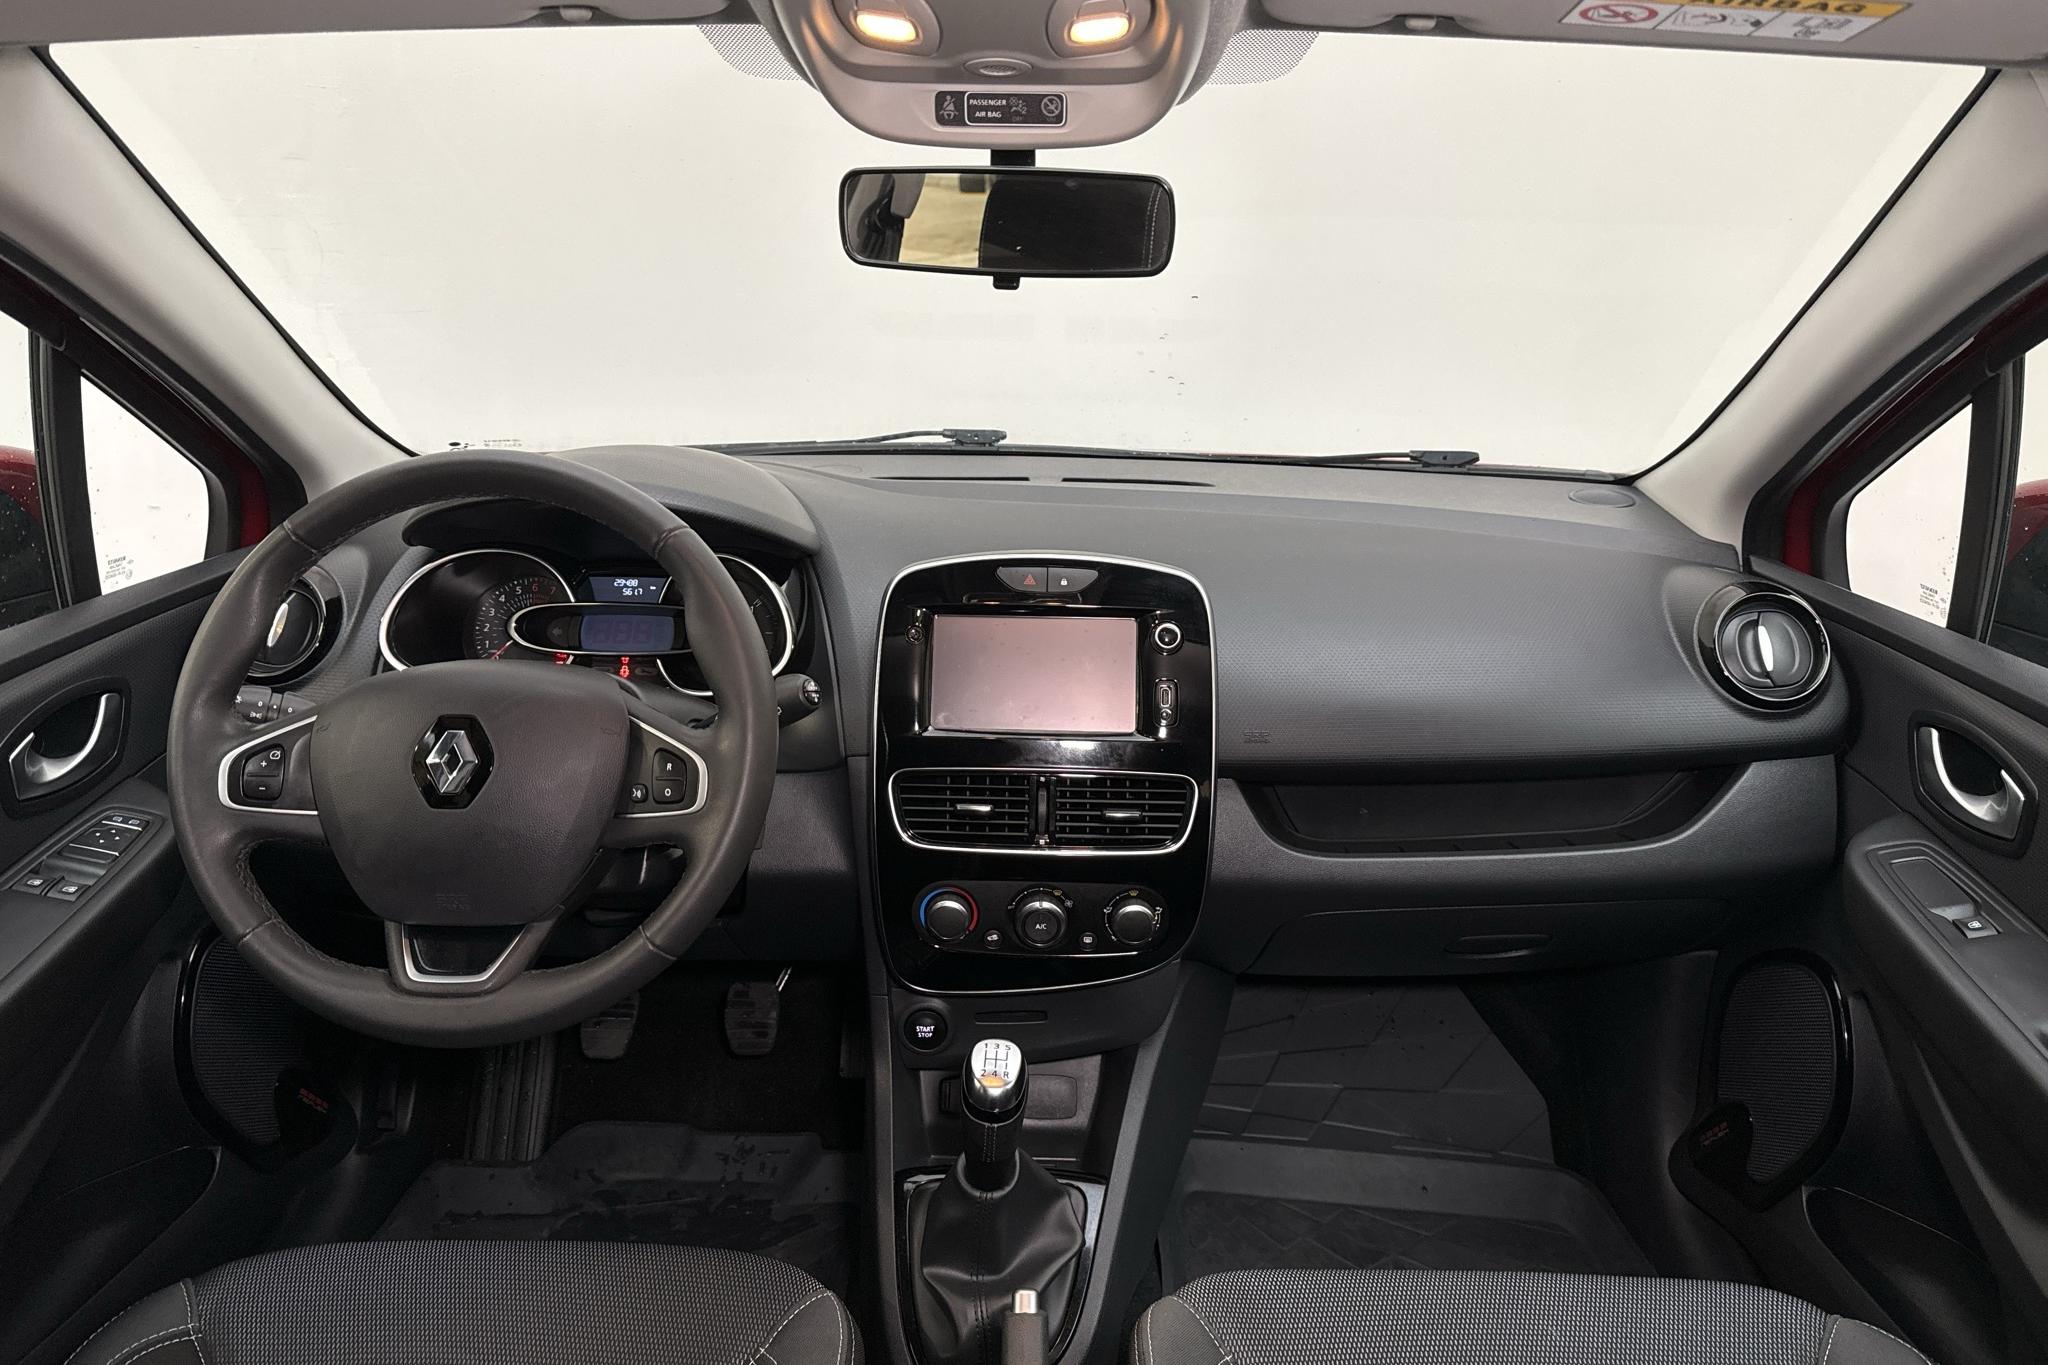 Renault Clio IV 1.2 16V 5dr (75hk) - 29 480 km - Manual - Dark Red - 2017